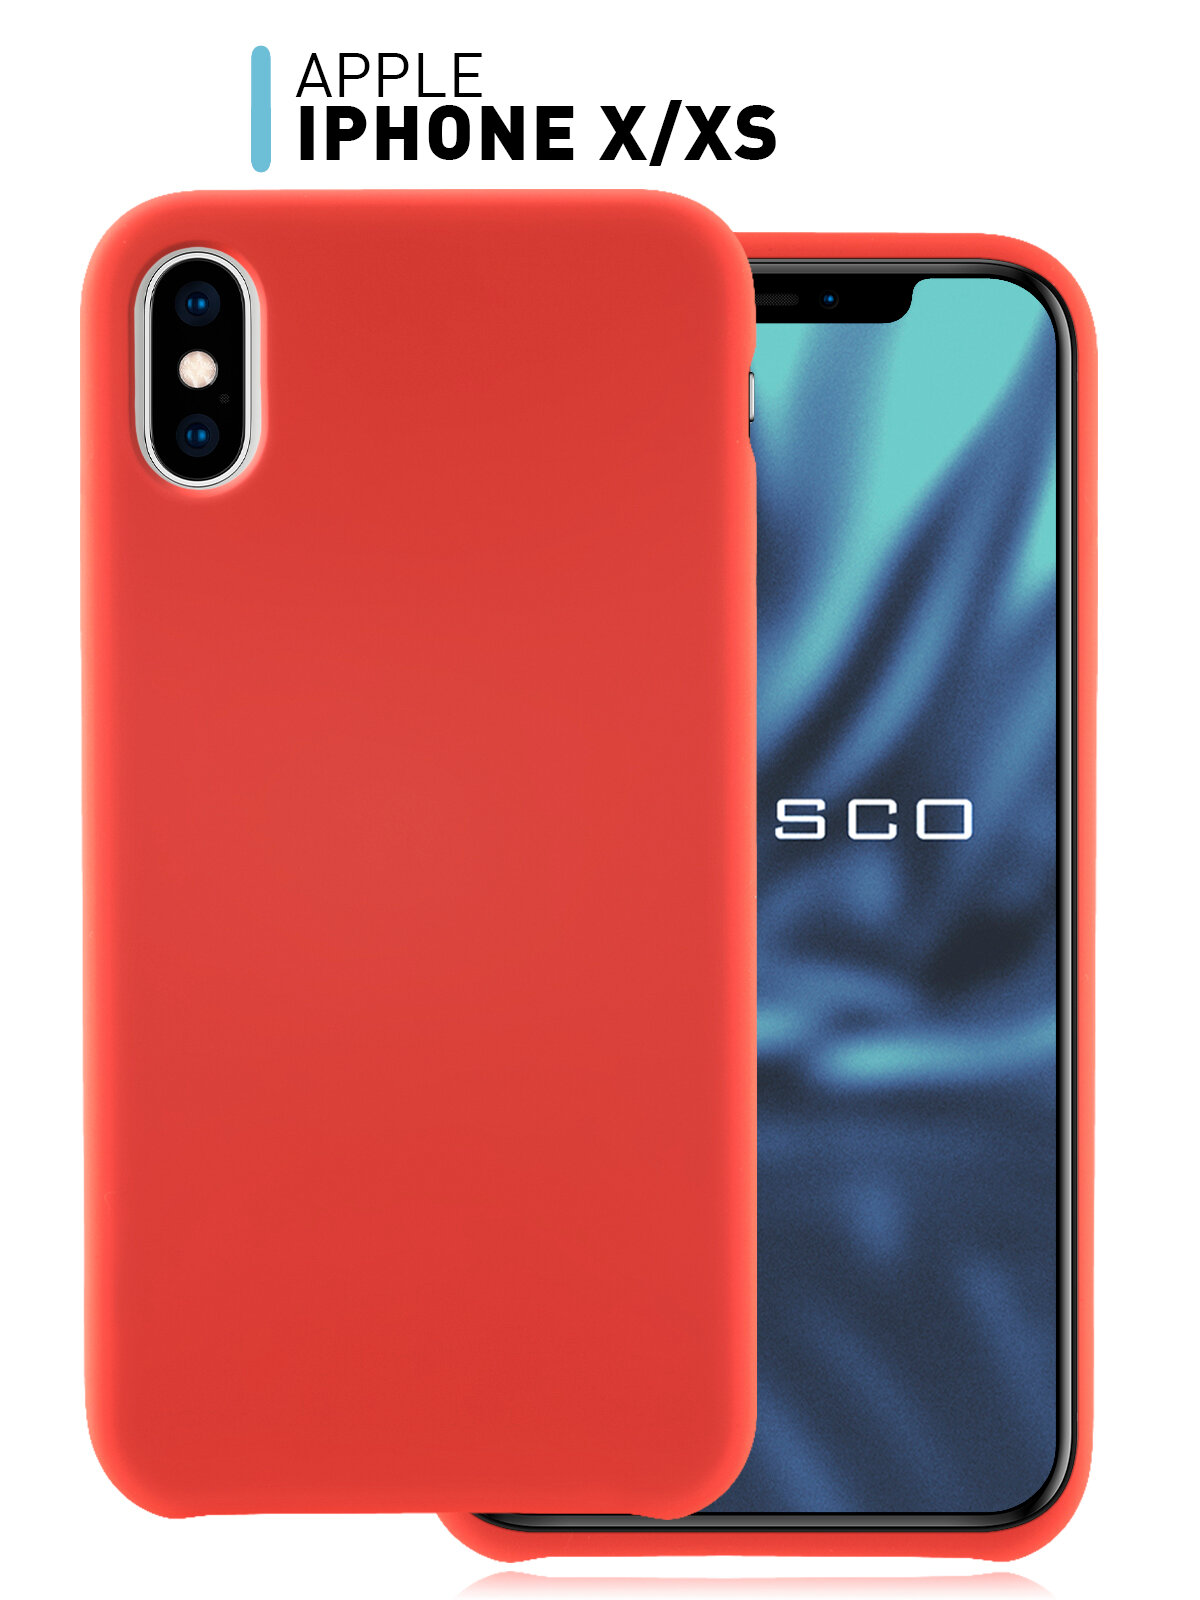 Прорезиненный чехол для Apple iPhone X, iPhone XS (Эпл Айфон) защита блока камеры, с микрофиброй, Soft-touch покрытие, красный ROSCO